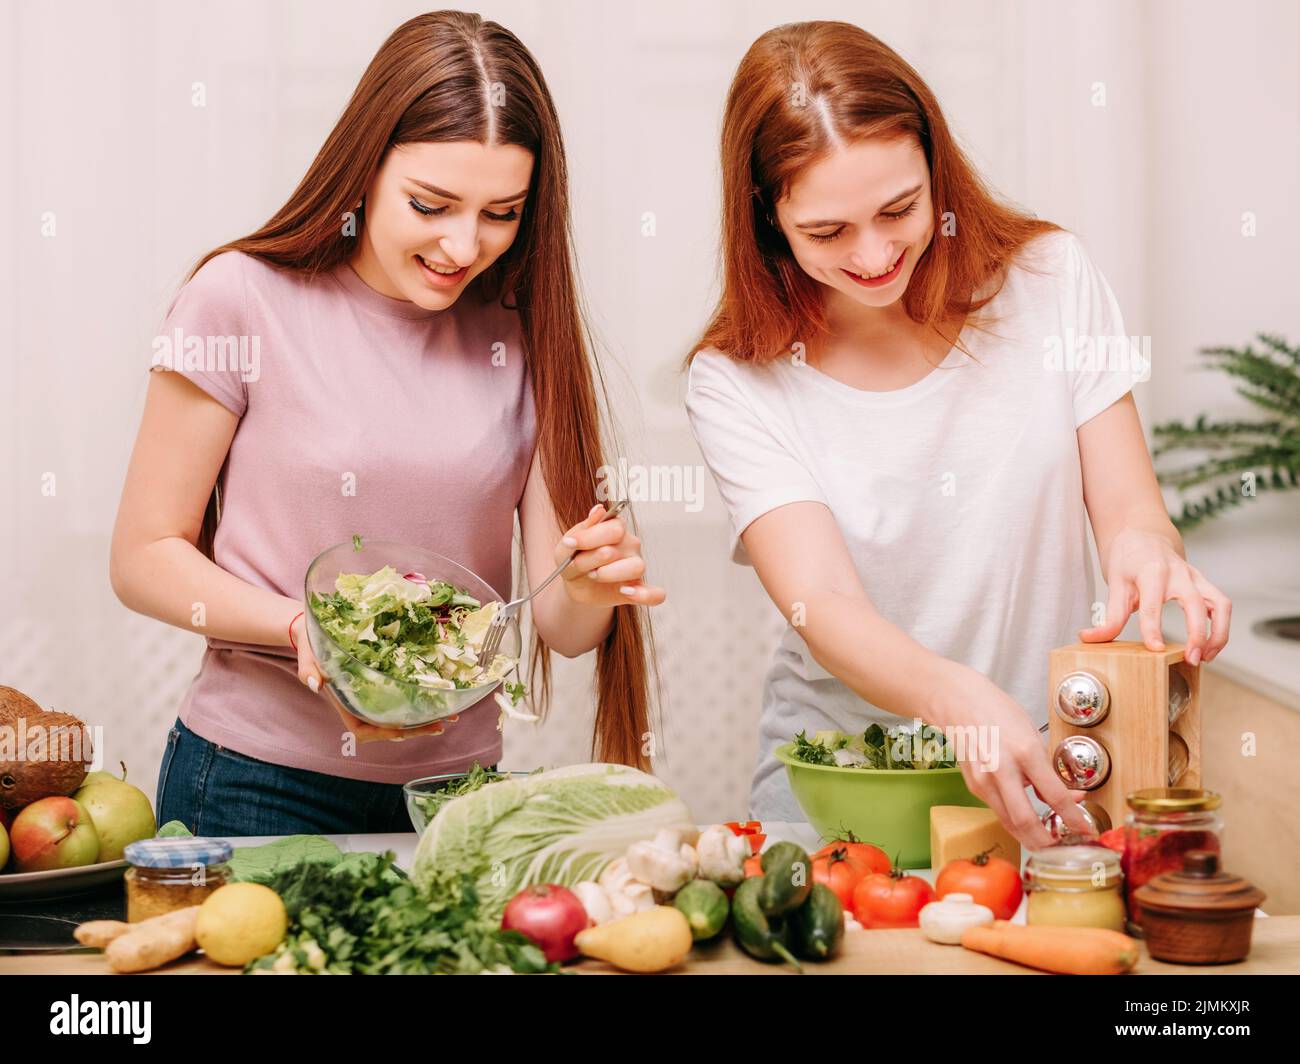 famille unité cuisine loisirs sœurs salade cuisine Banque D'Images